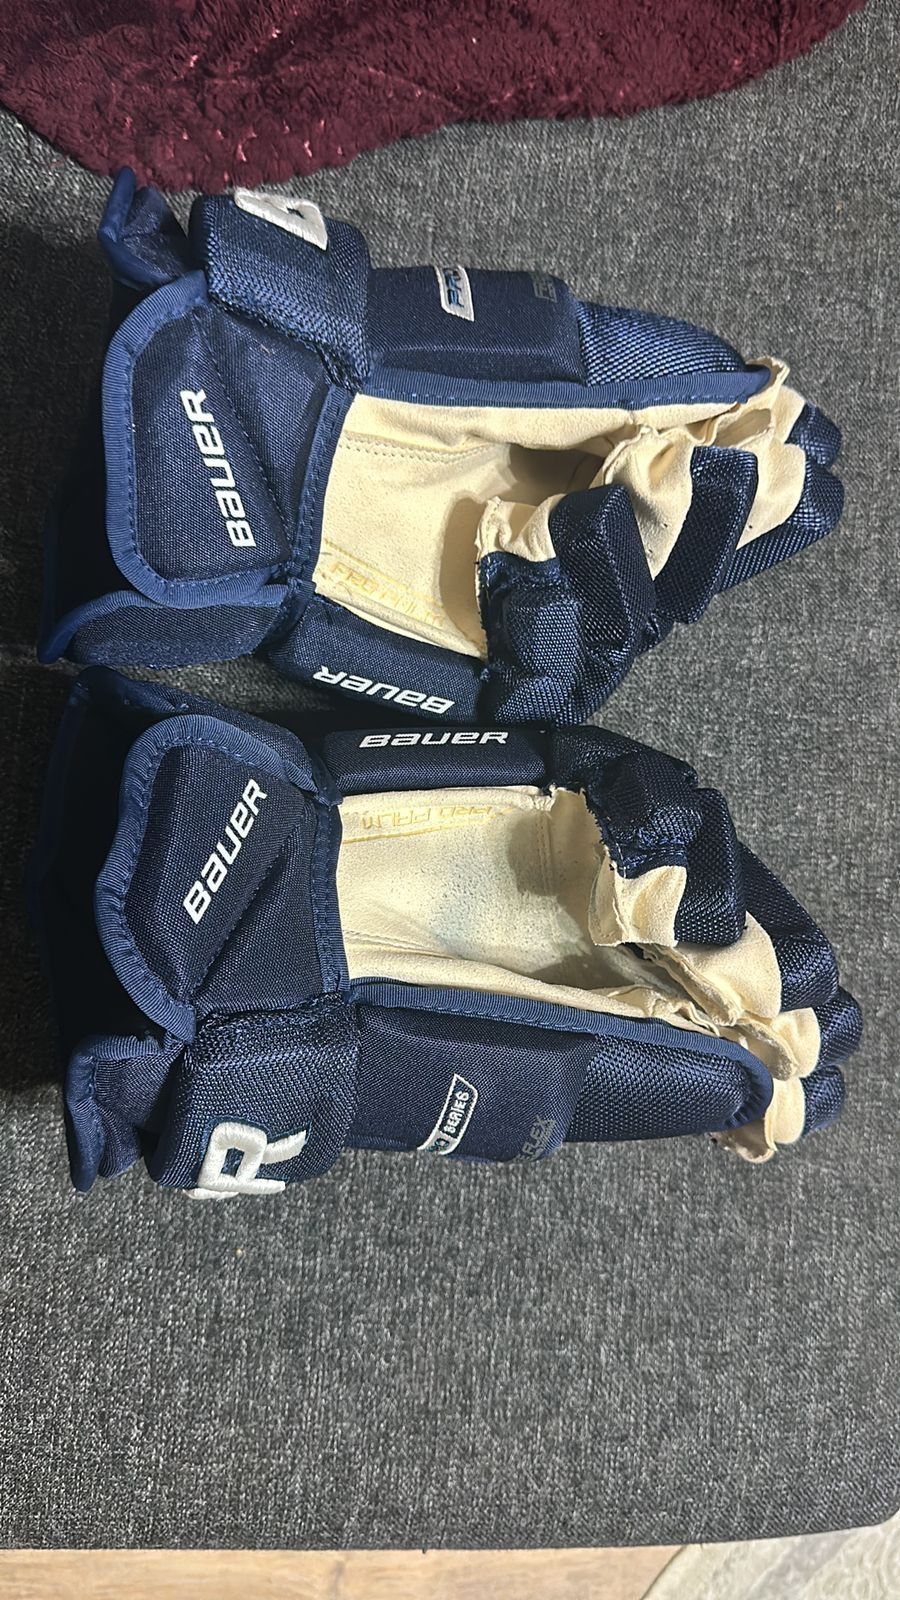 Продам хоккейные краги Bauer pro series 14 размер новые